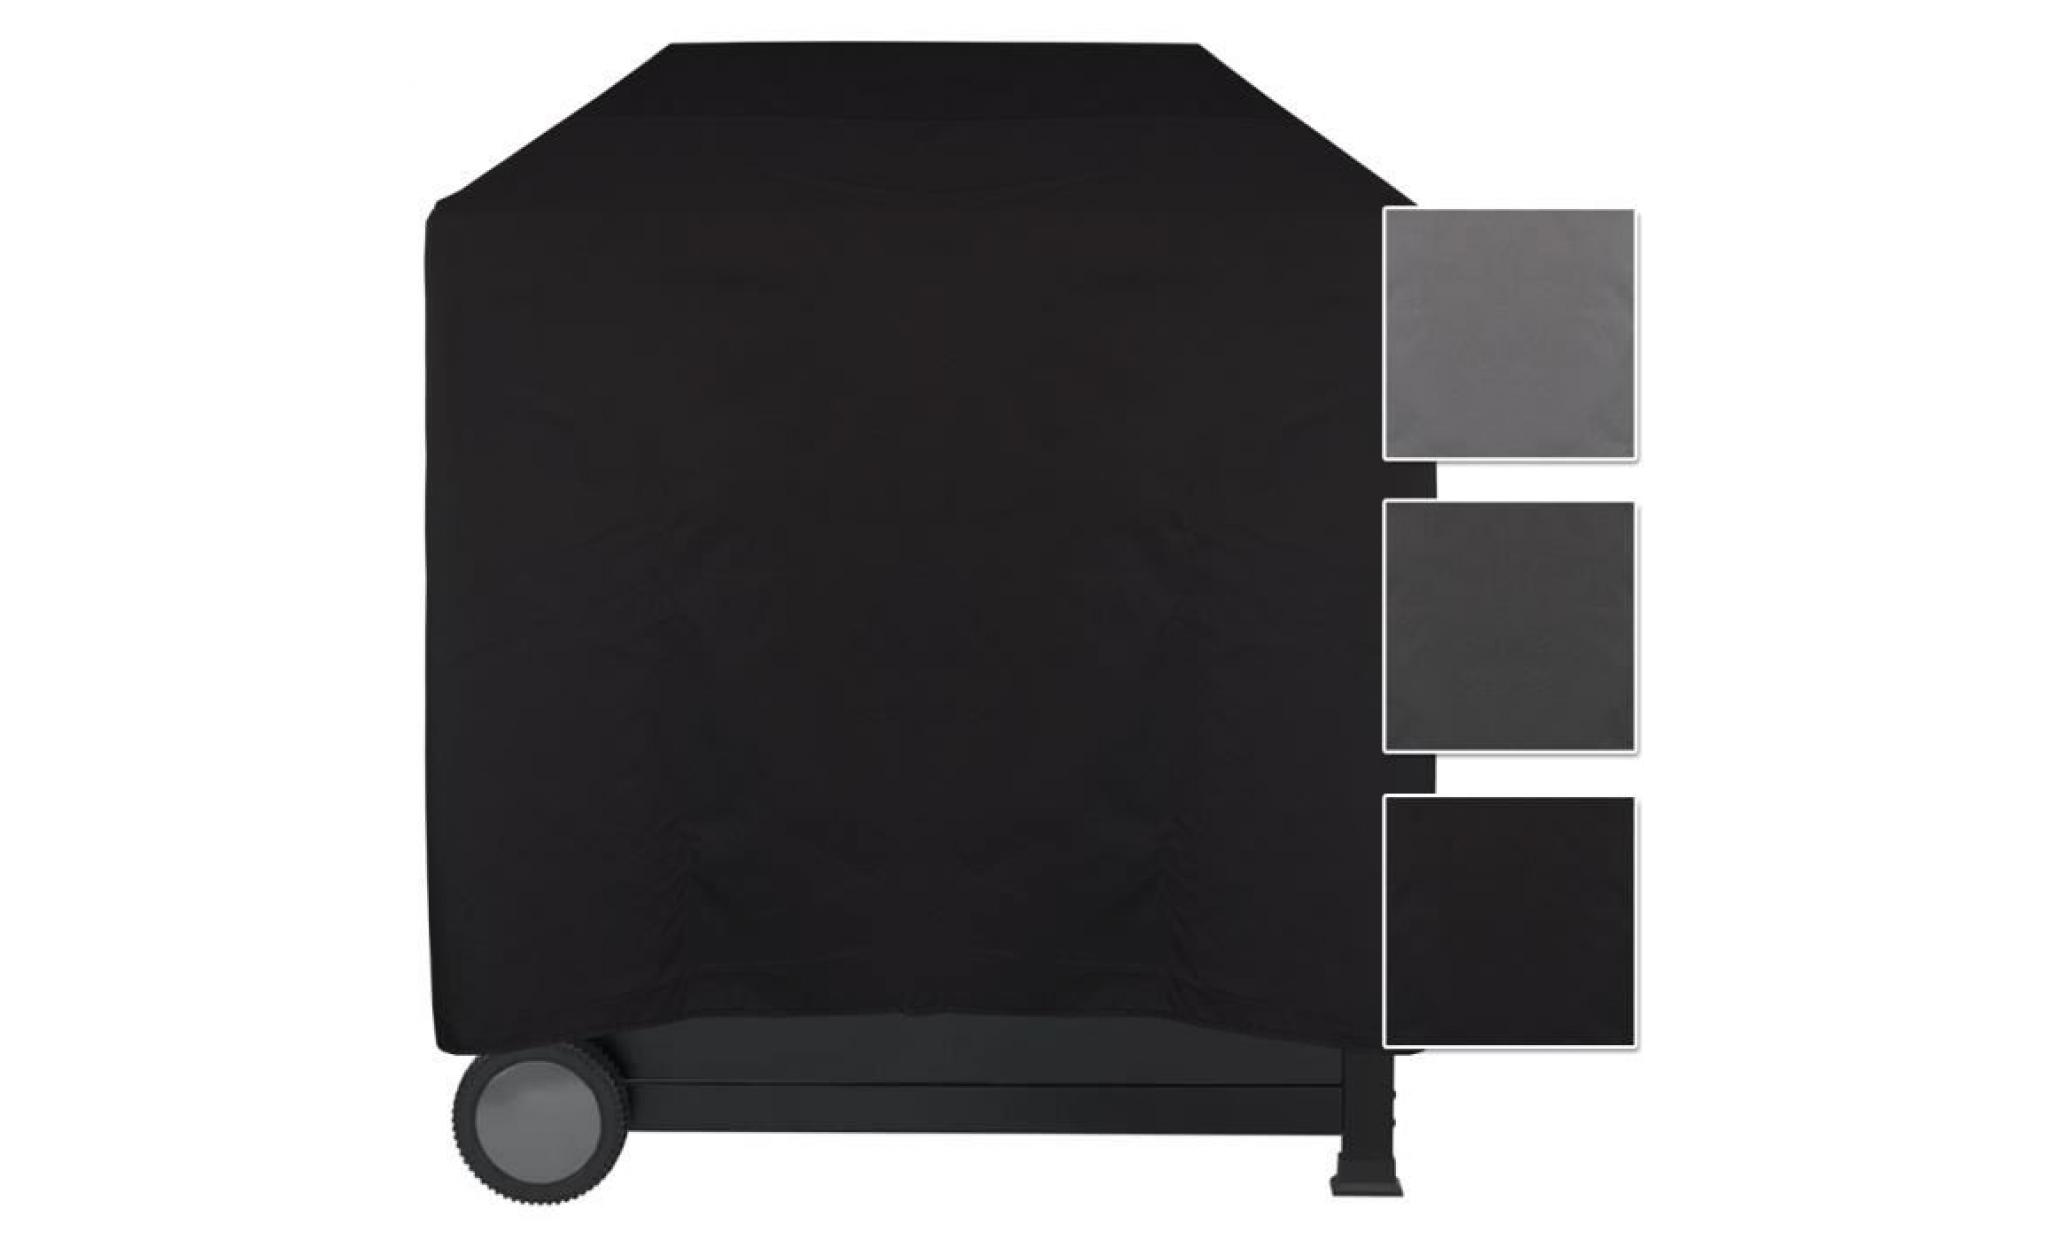 housse pour barbecue imperméable lounge noir, m 78 x 58 x 78 cm   protège contre la pluie, la saleté et les rayons du soleil pas cher